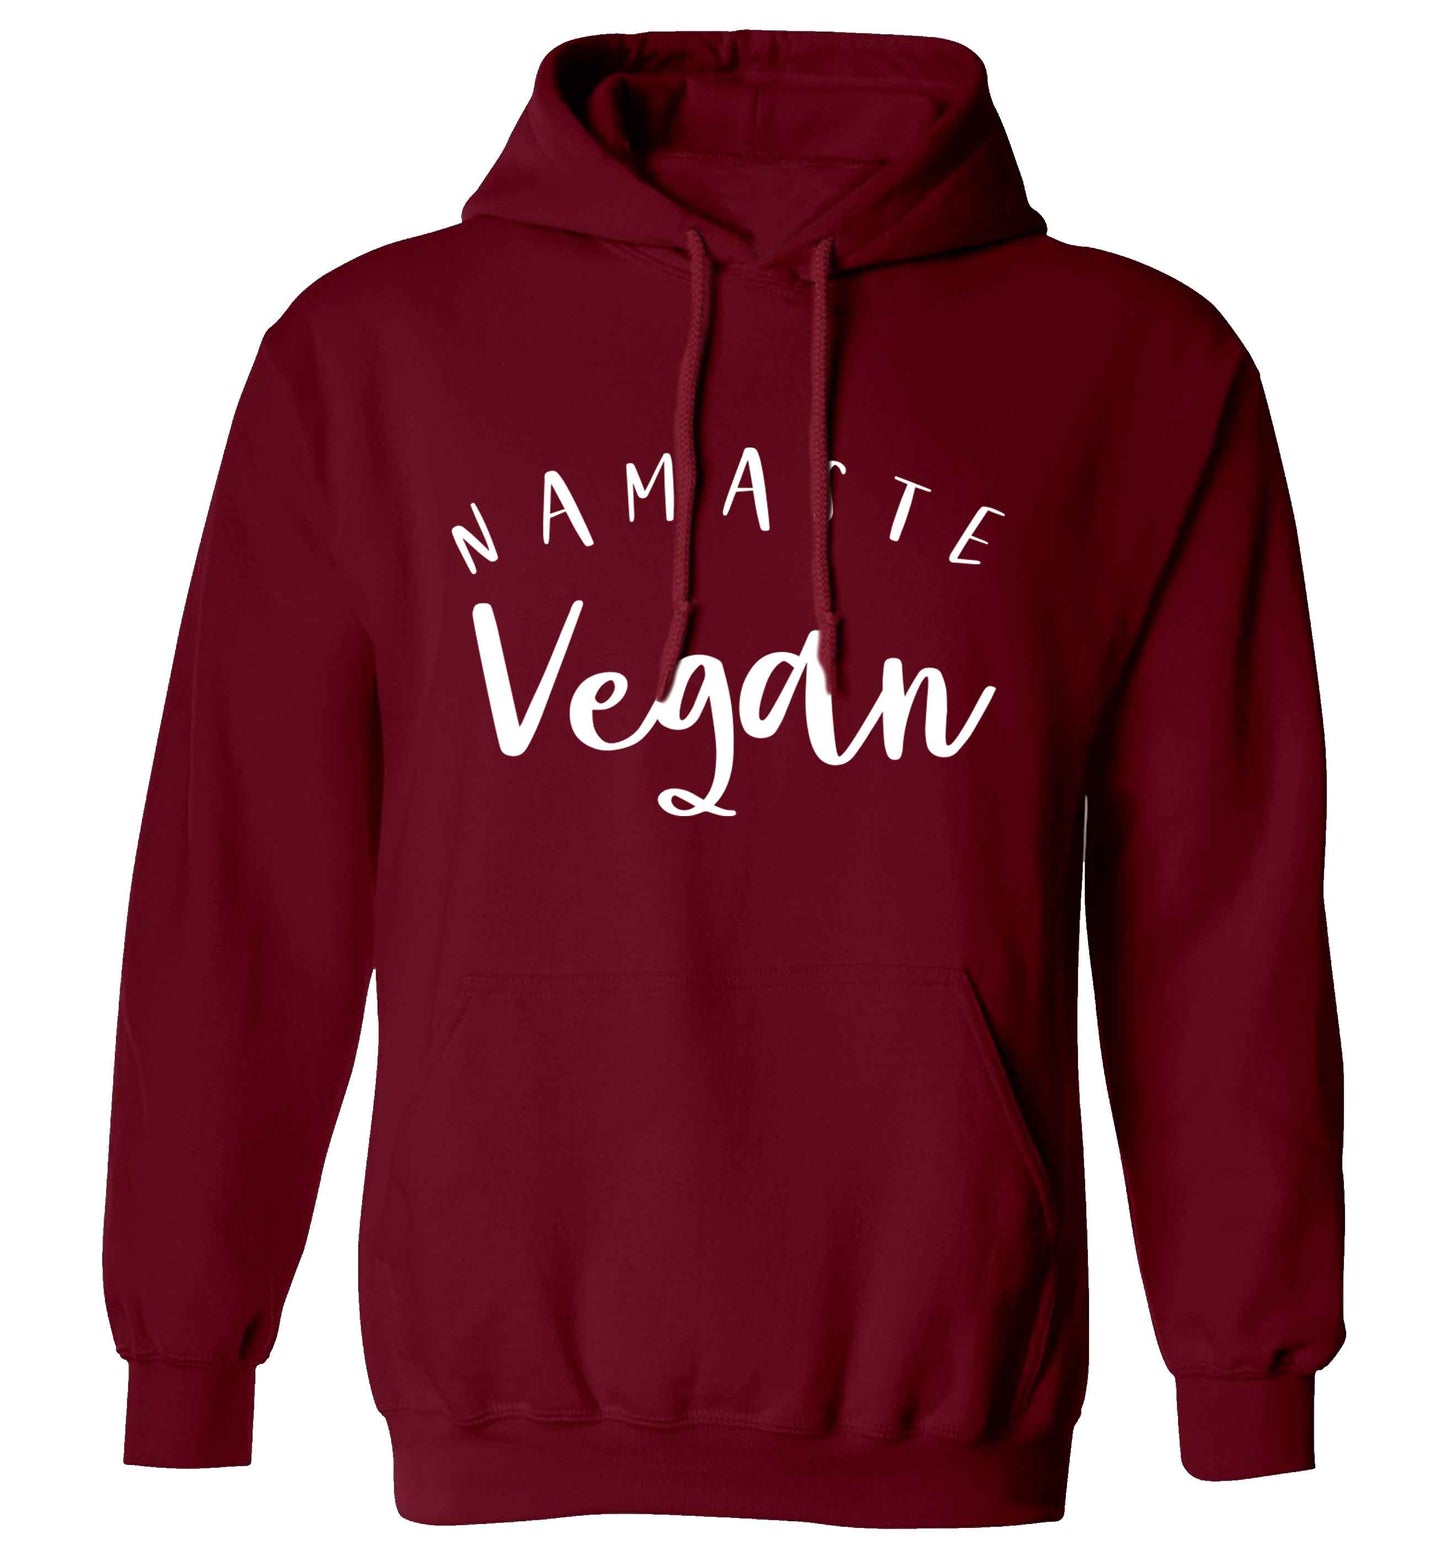 Namaste vegan adults unisex maroon hoodie 2XL